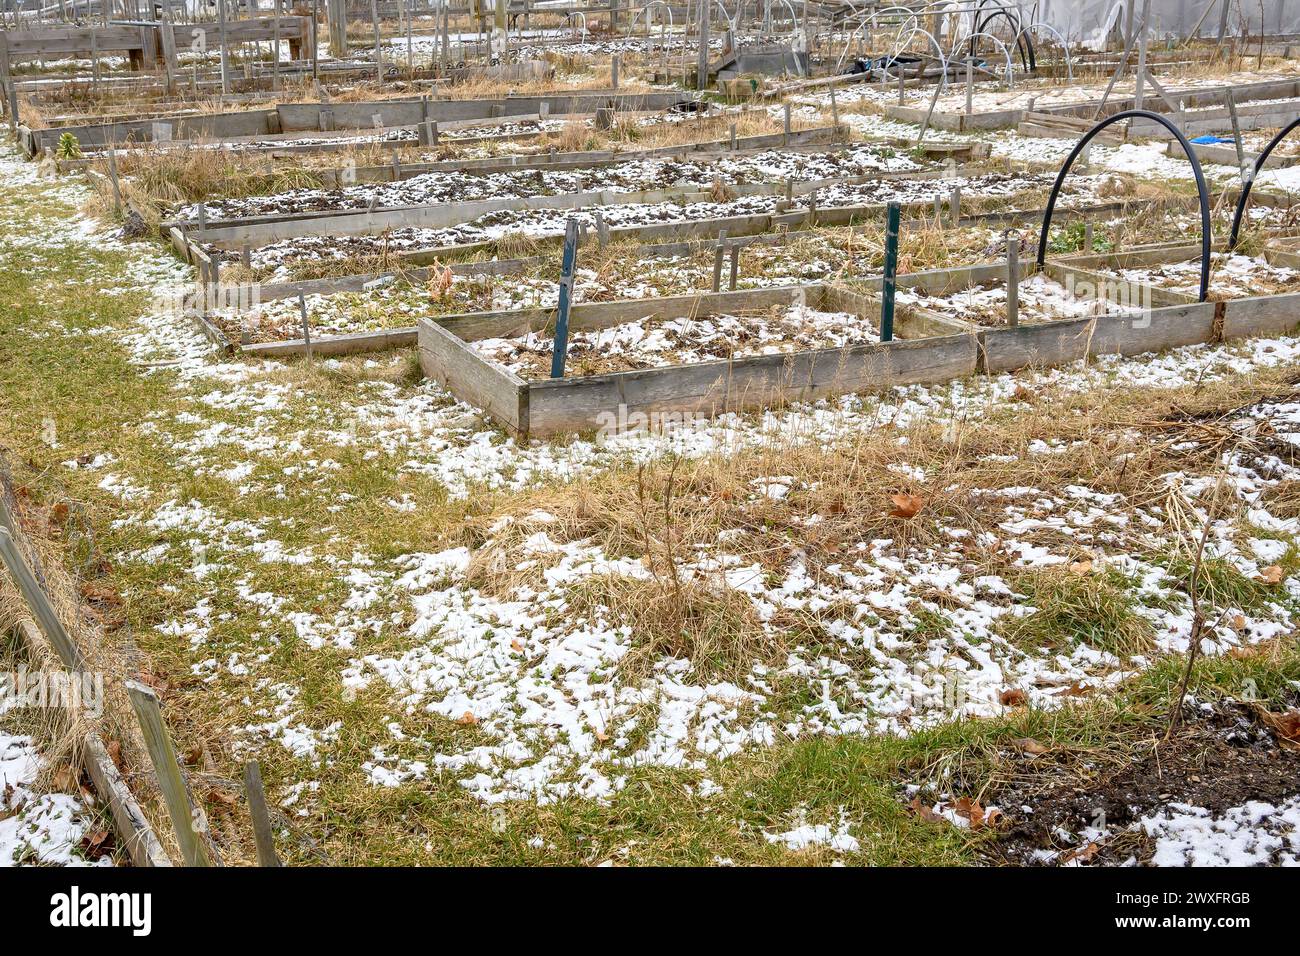 Un jardin communautaire en hiver. Le jardin a des places pour les plantes, mais il est par ailleurs vide sauf pour l'herbe morte et la neige. Banque D'Images